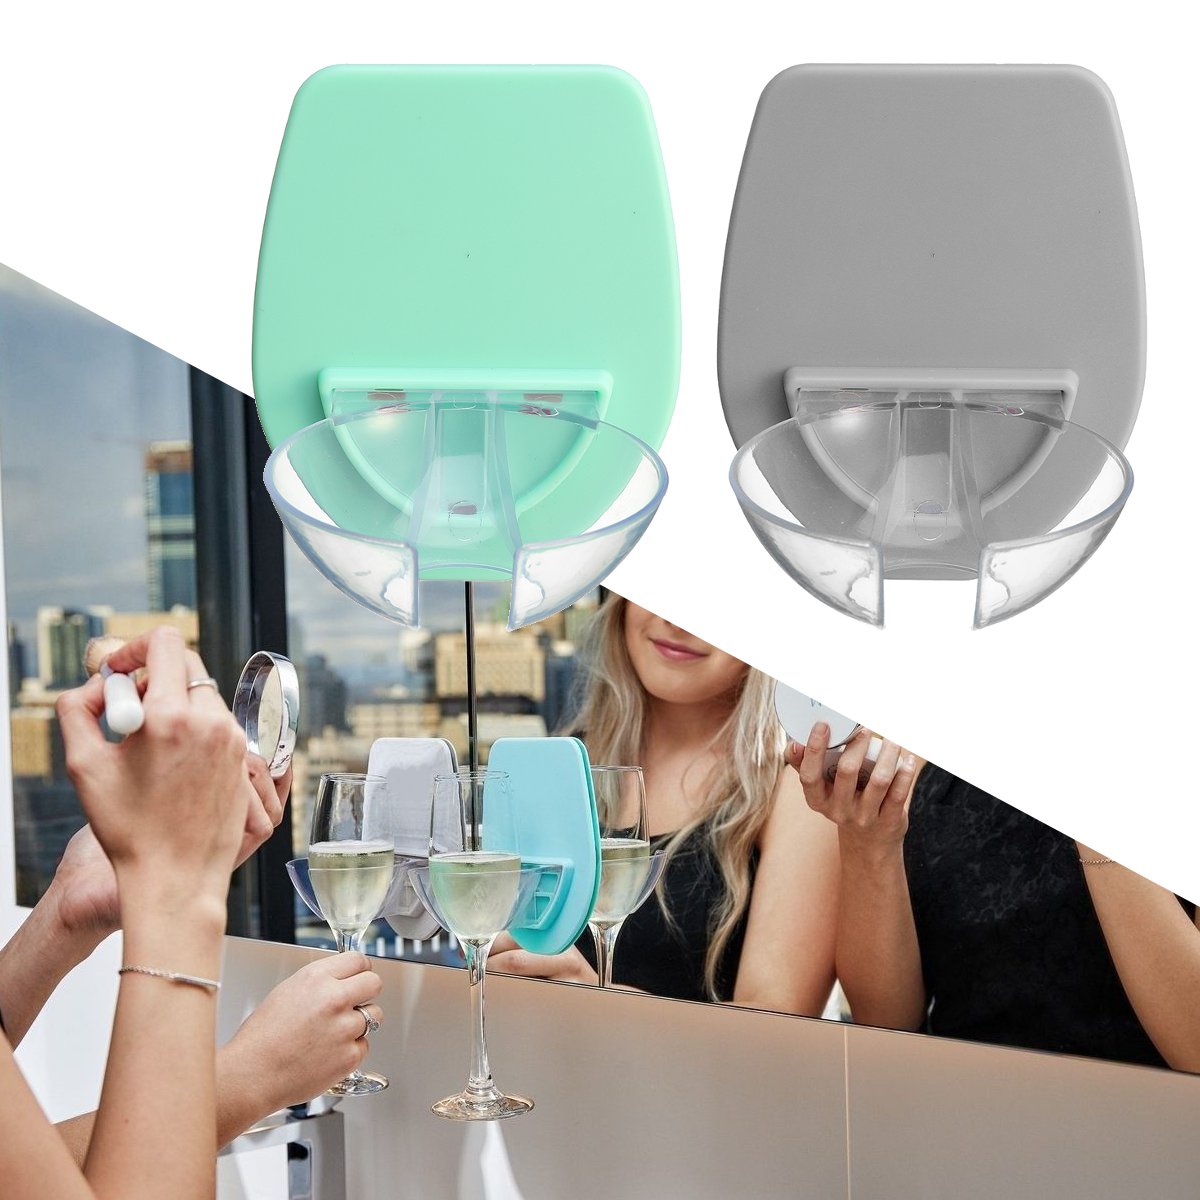 HONANA-Water-Cup-Holder-Drinking-Glasses-Wall-Sticker-Storage-Kitchen-Storage-Rack-1432314-1